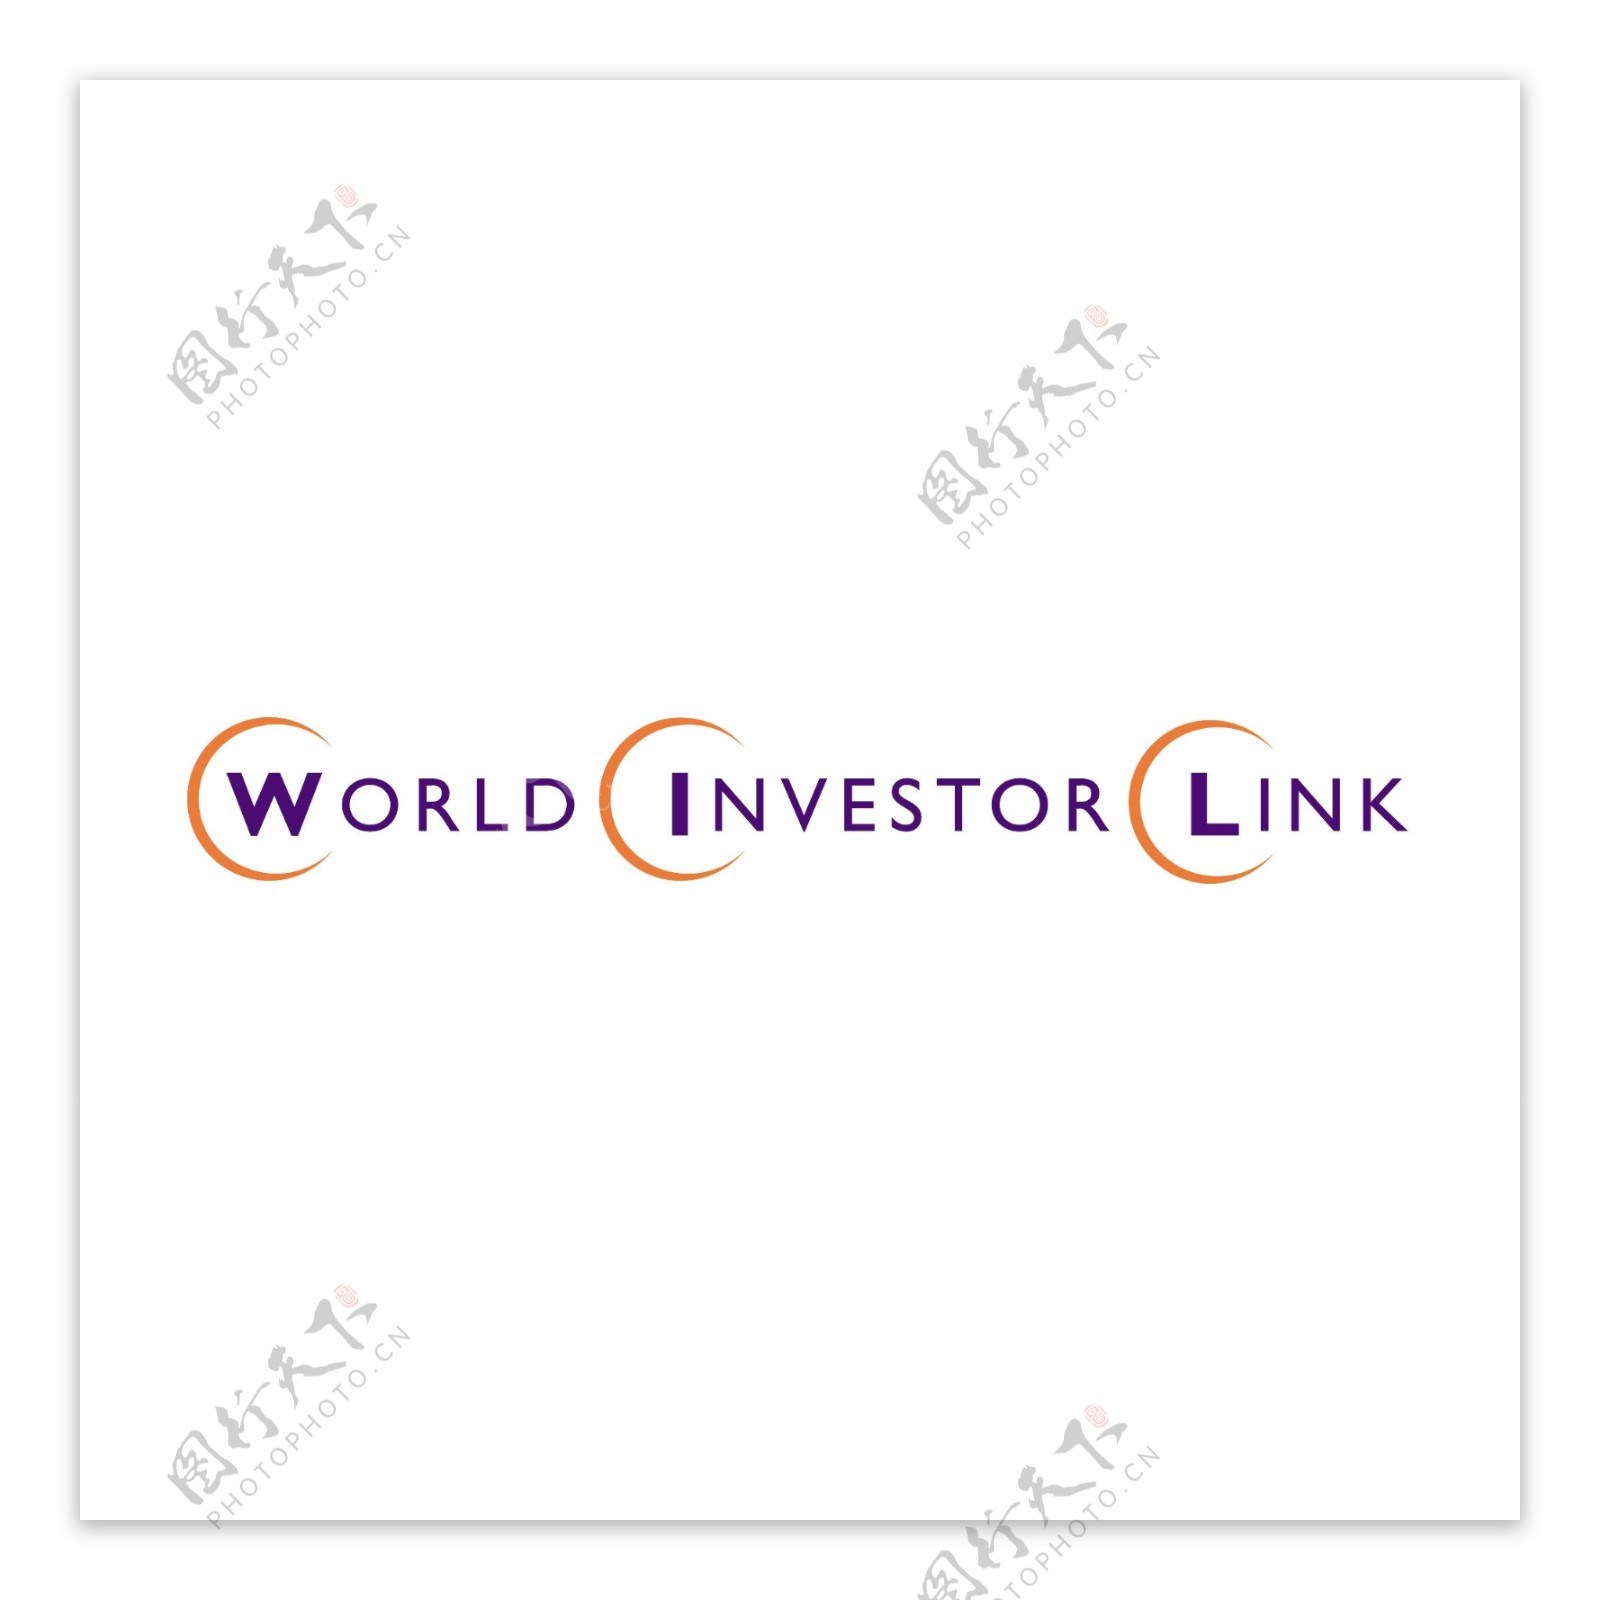 世界投资者联系